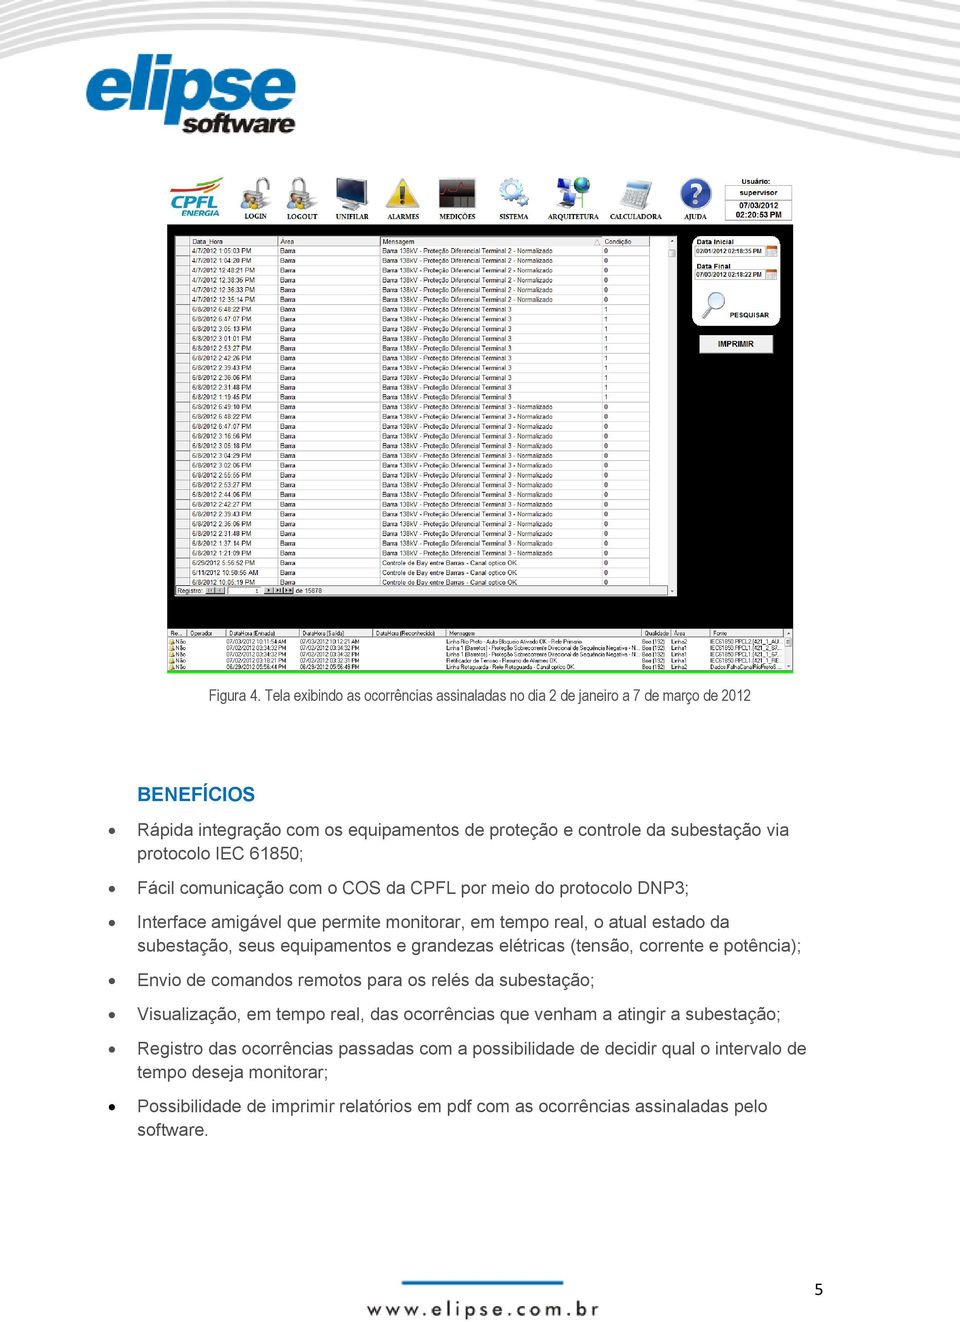 61850; Fácil comunicação com o COS da CPFL por meio do protocolo DNP3; Interface amigável que permite monitorar, em tempo real, o atual estado da subestação, seus equipamentos e grandezas